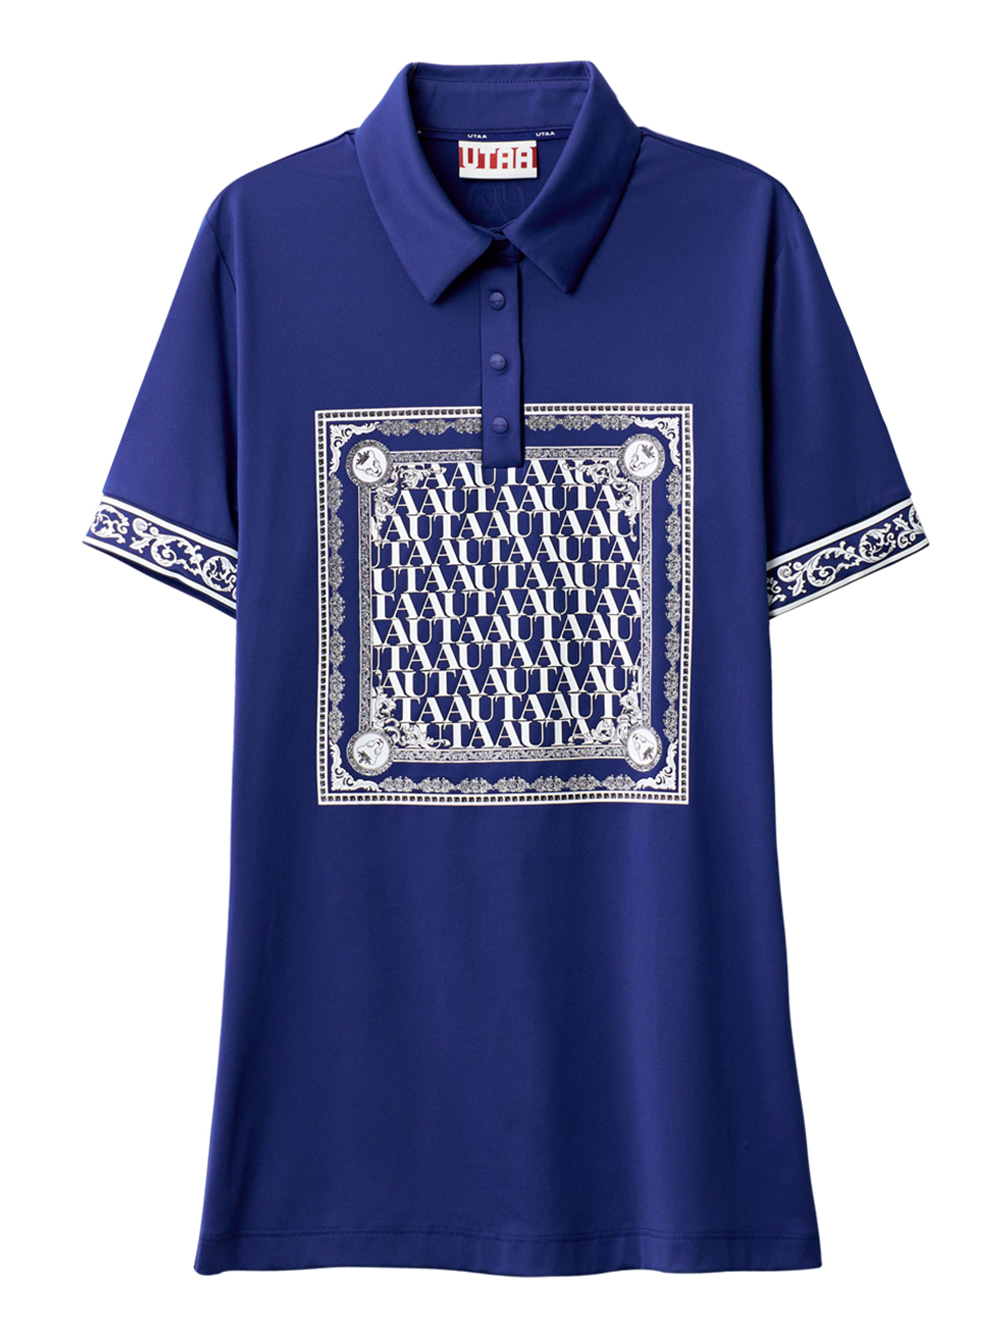 UTAA Swing Fit Blanc Baroque PK T-Shirts : Blue (UB2TSF340BL)